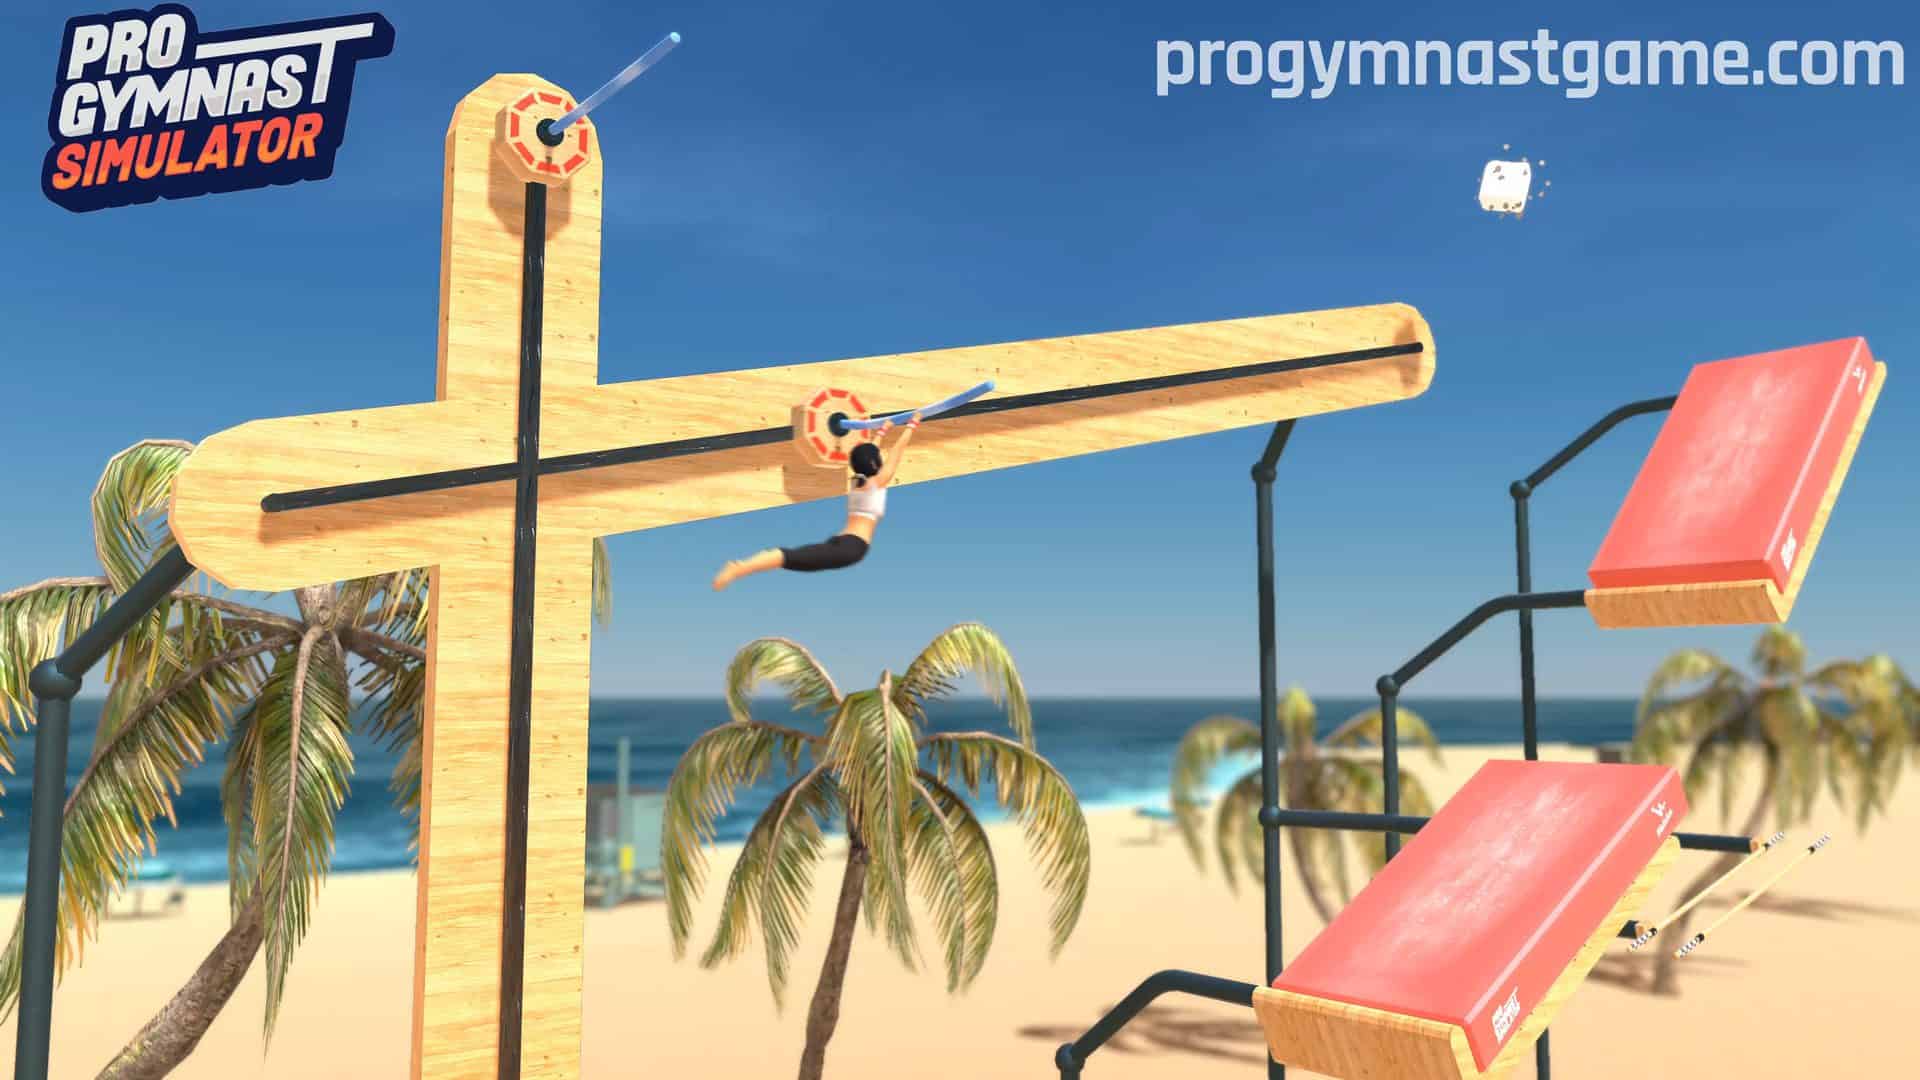 Pro Gymnast Simulator game scene